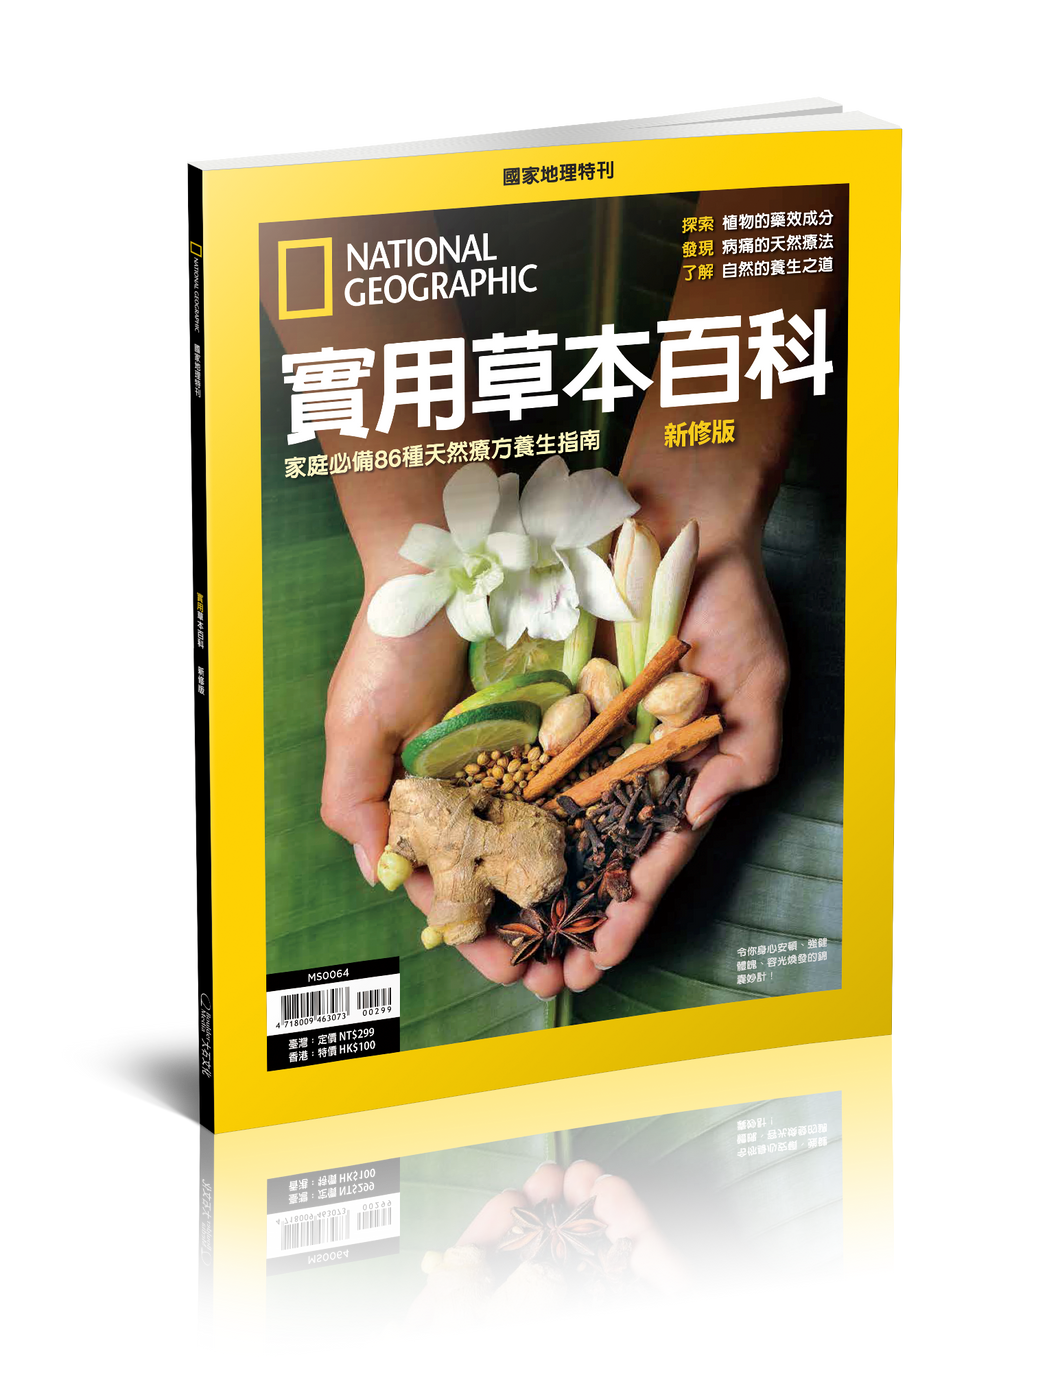 國家地理雜誌 中文版 紙本 訂閱 1年12期 合購 《實用本草百科》特刊